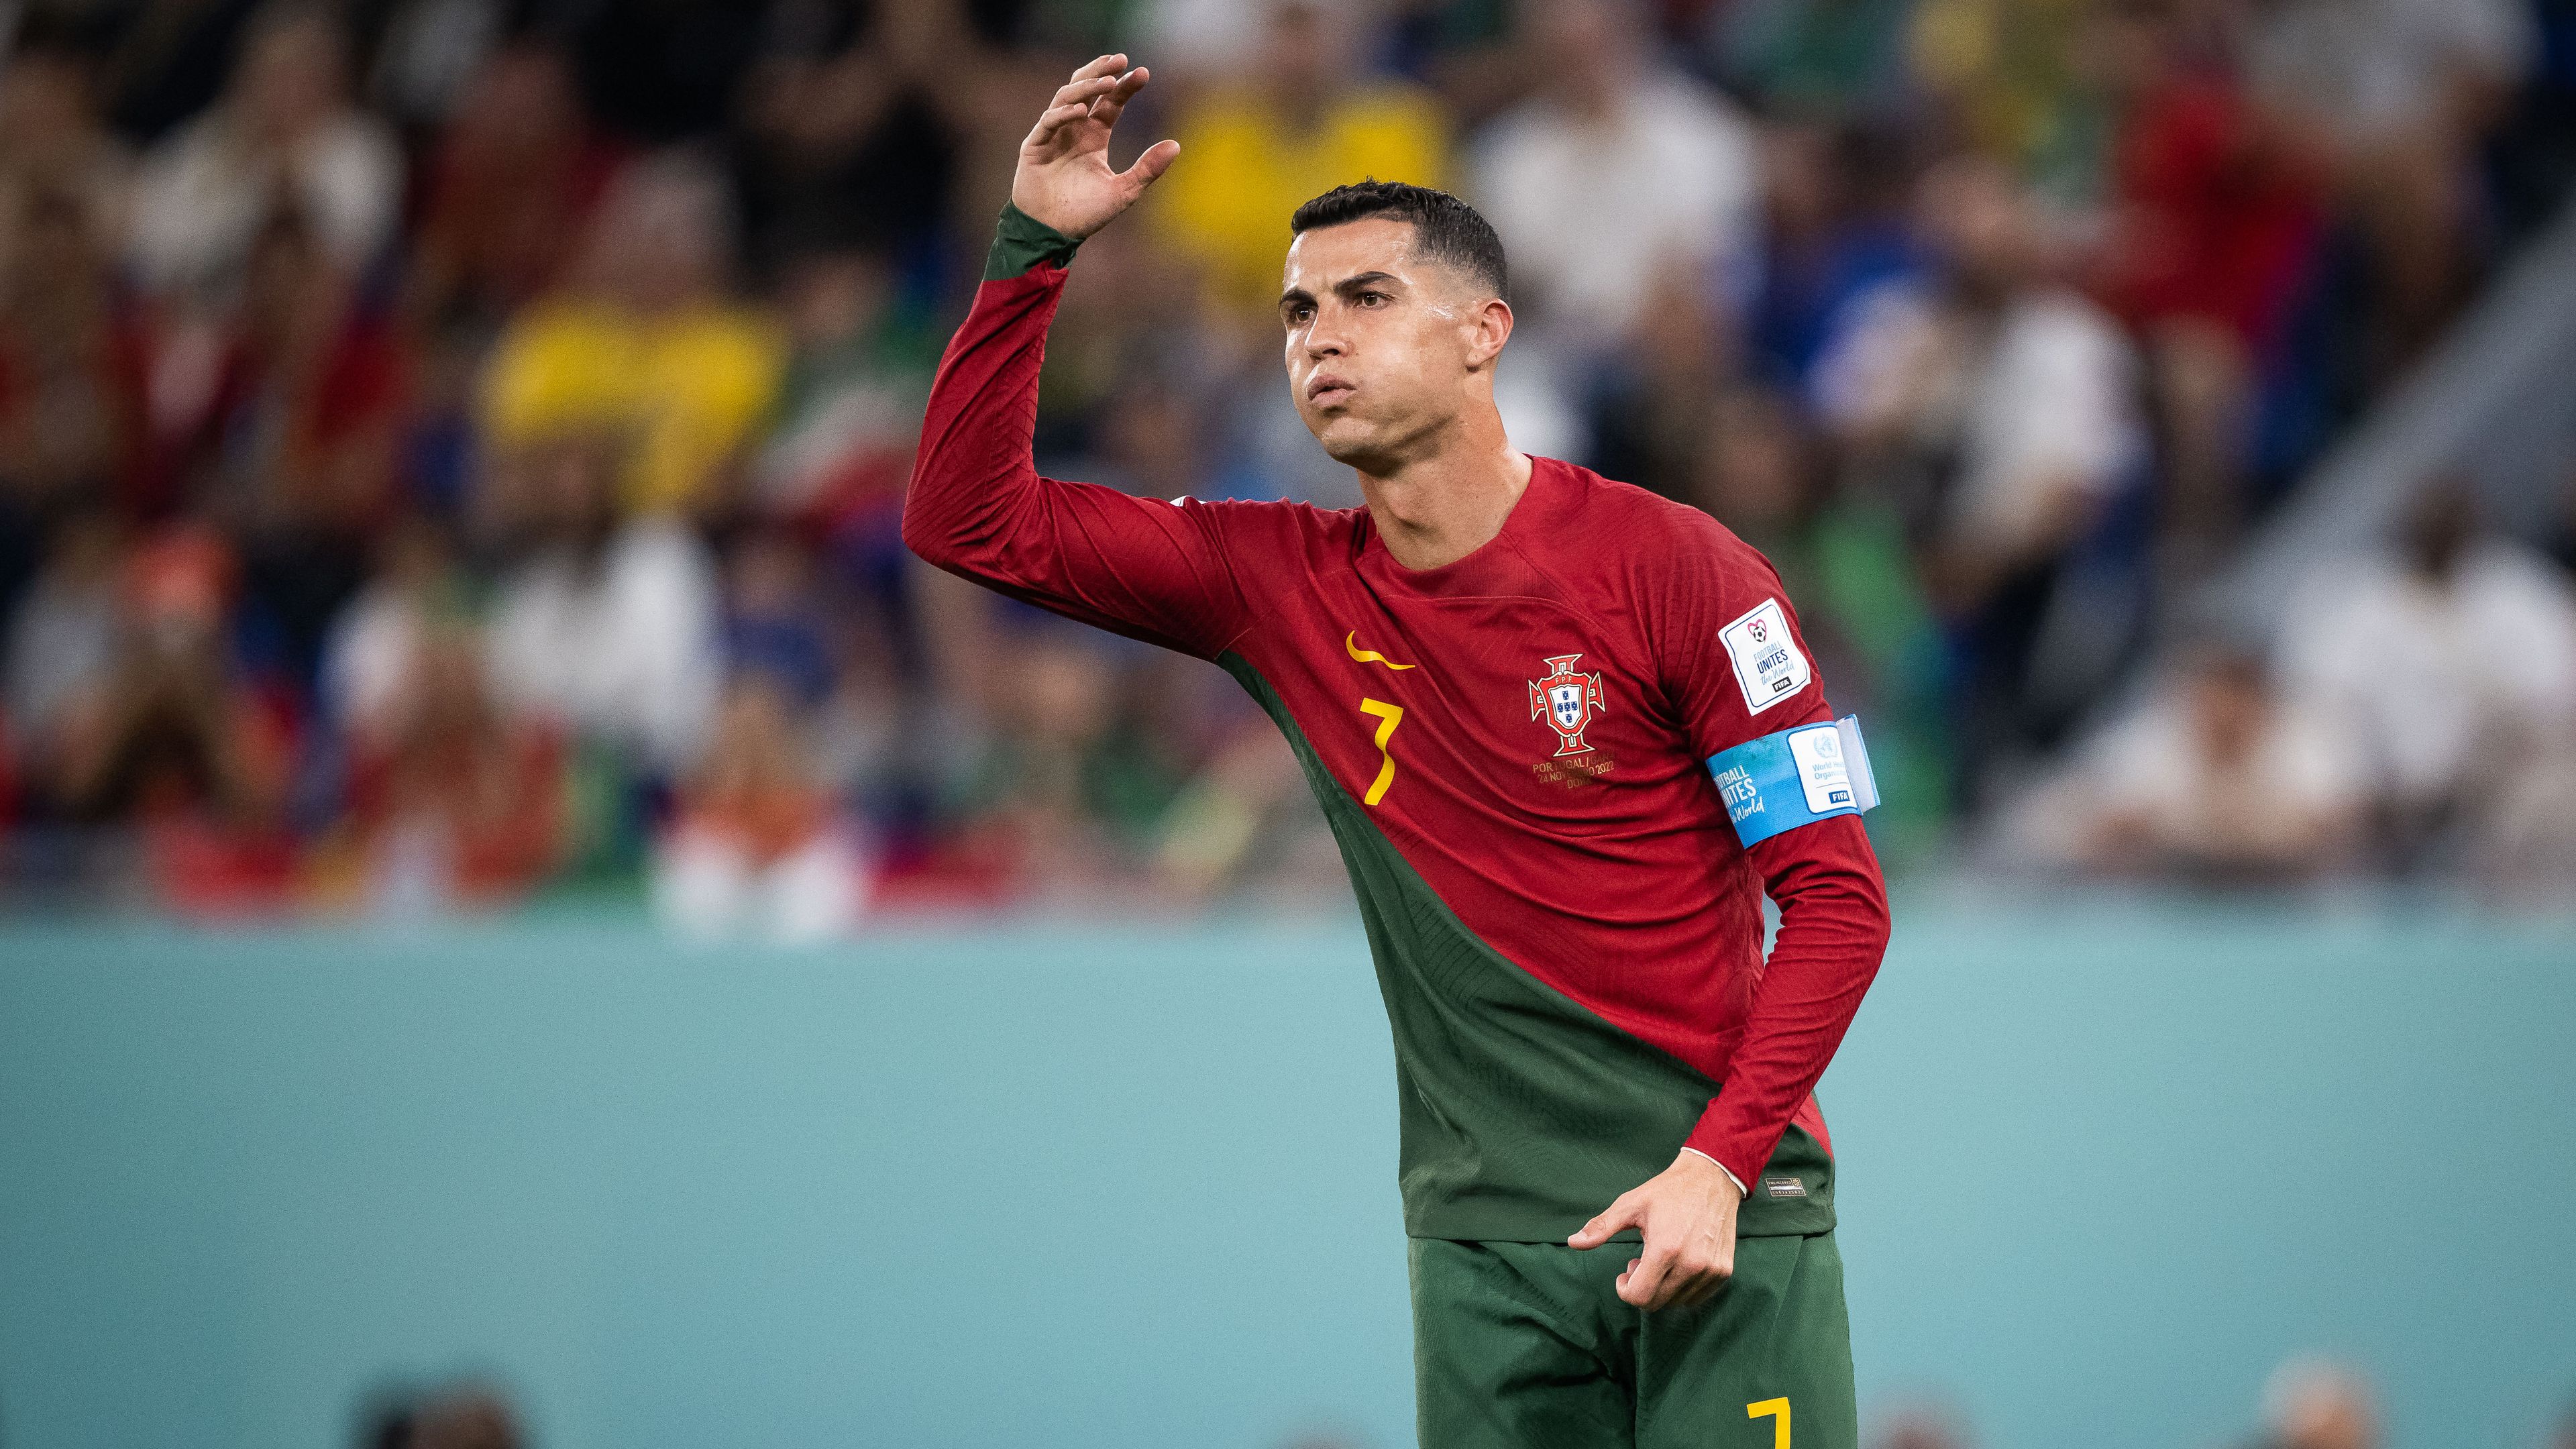 VIDEÓ: Ronaldo meccs közben kivett valamit a gatyájából és megette